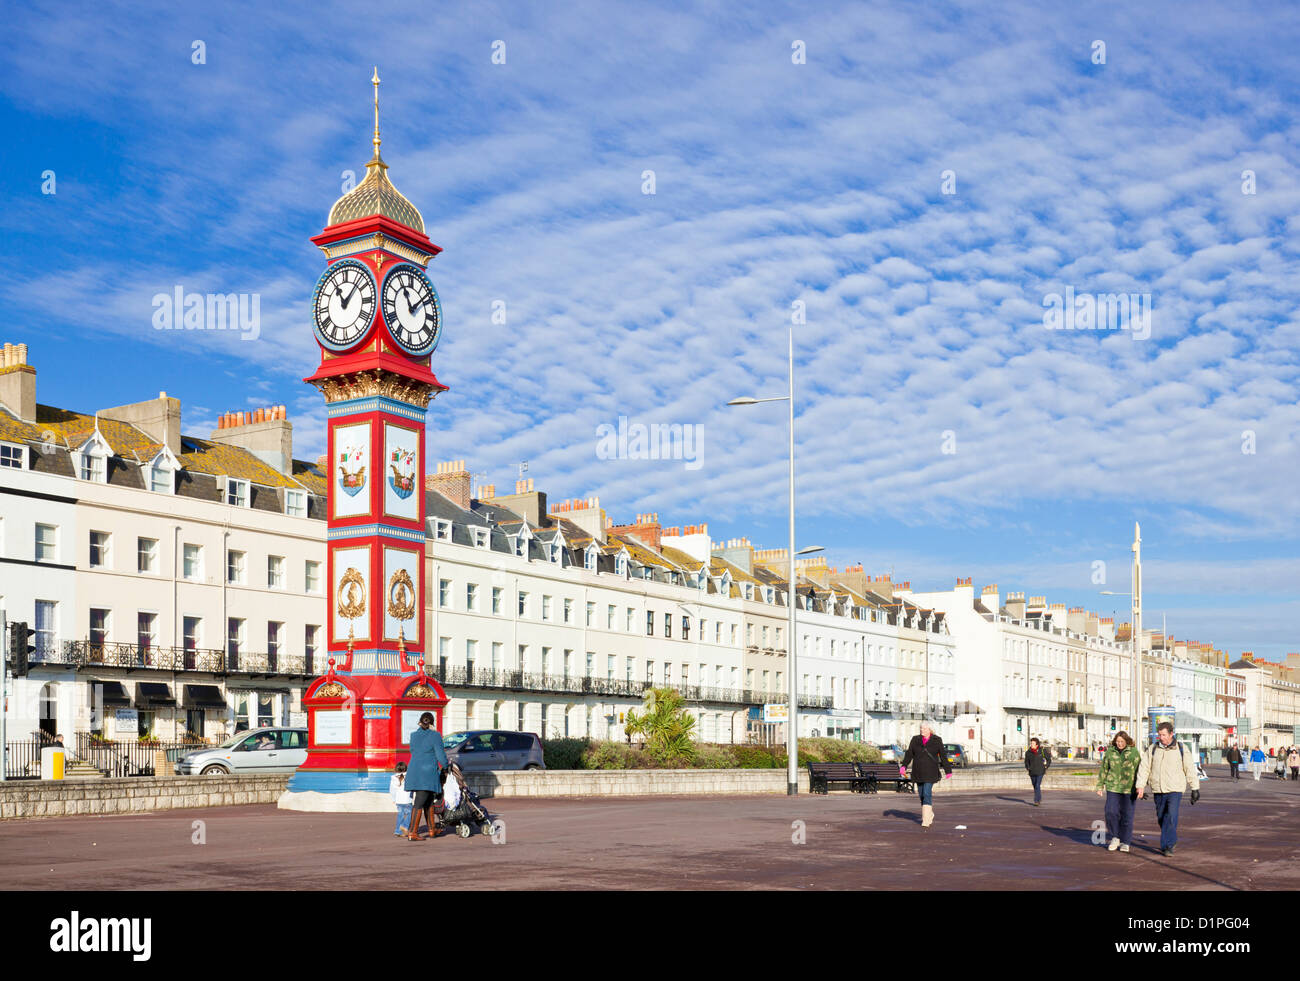 L'horloge du Jubilé a été construit pour le Jubilé de la reine Victoria en 1887 se dresse sur l'Esplanade Weymouth Dorset England UK GO Banque D'Images